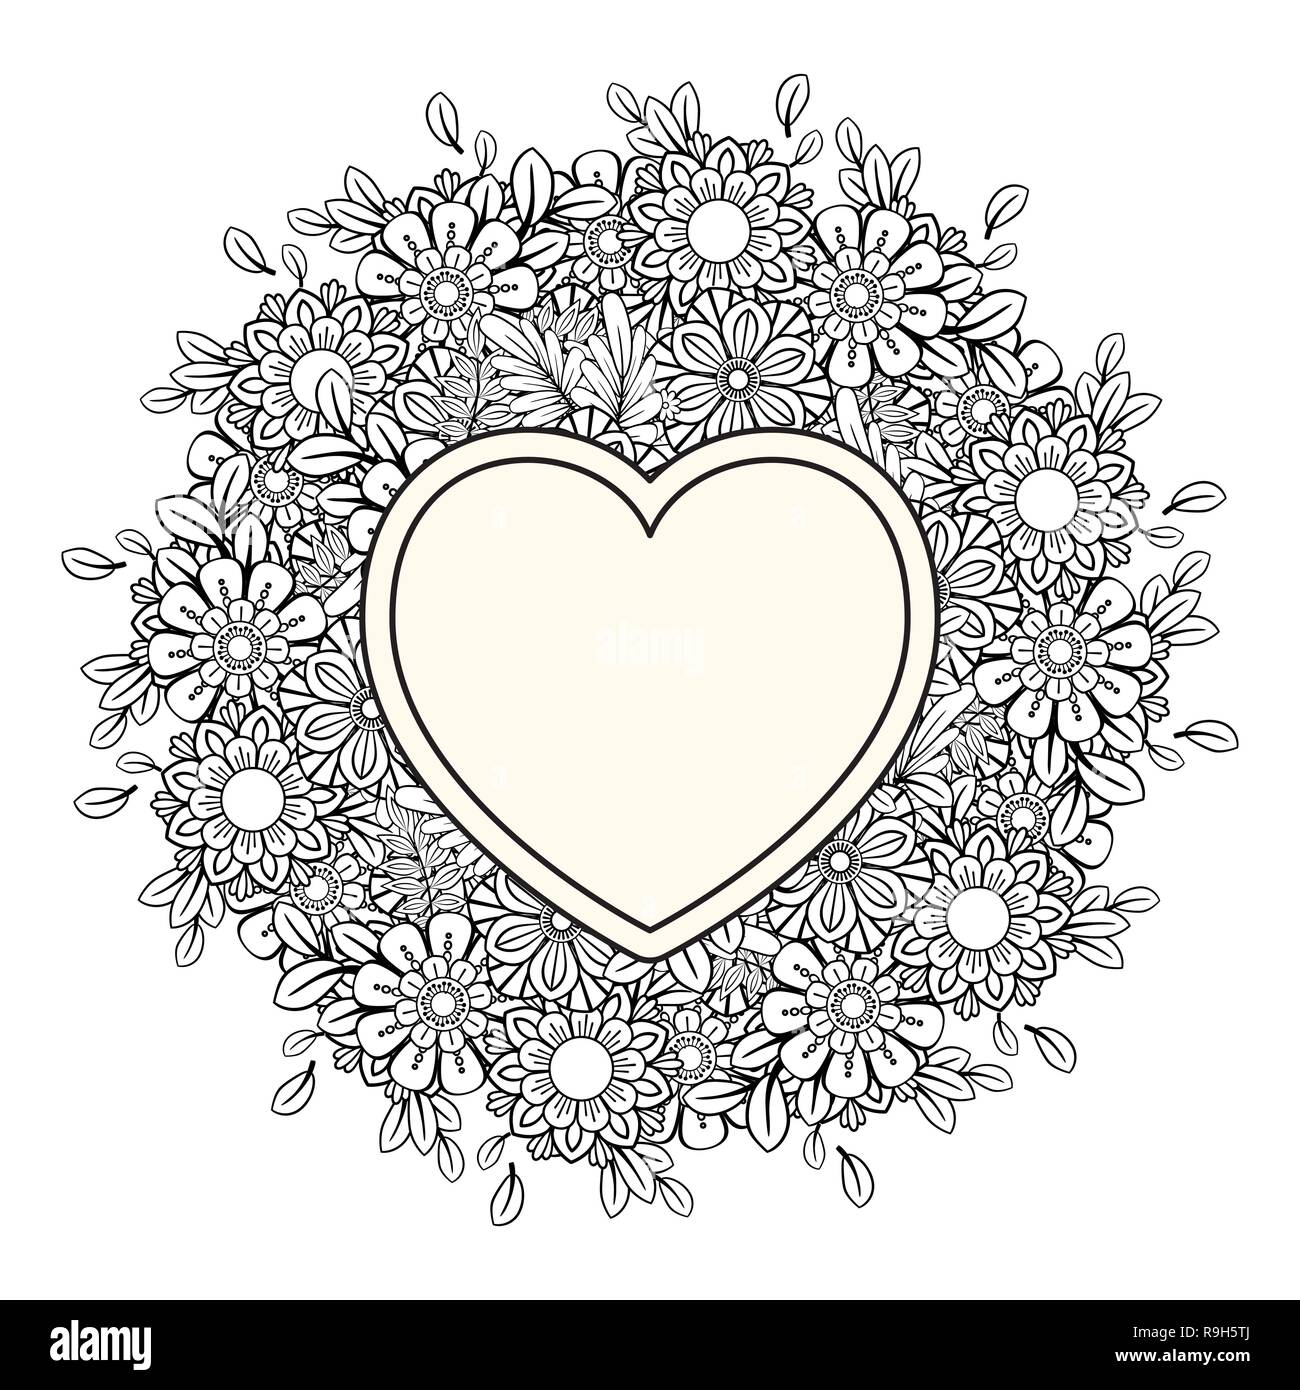 Corazãn floral dãa de san valentãn adulto pãgina para colorear ilustraciãn vectorial aislado sobre fondo blanco imagen vector de stock